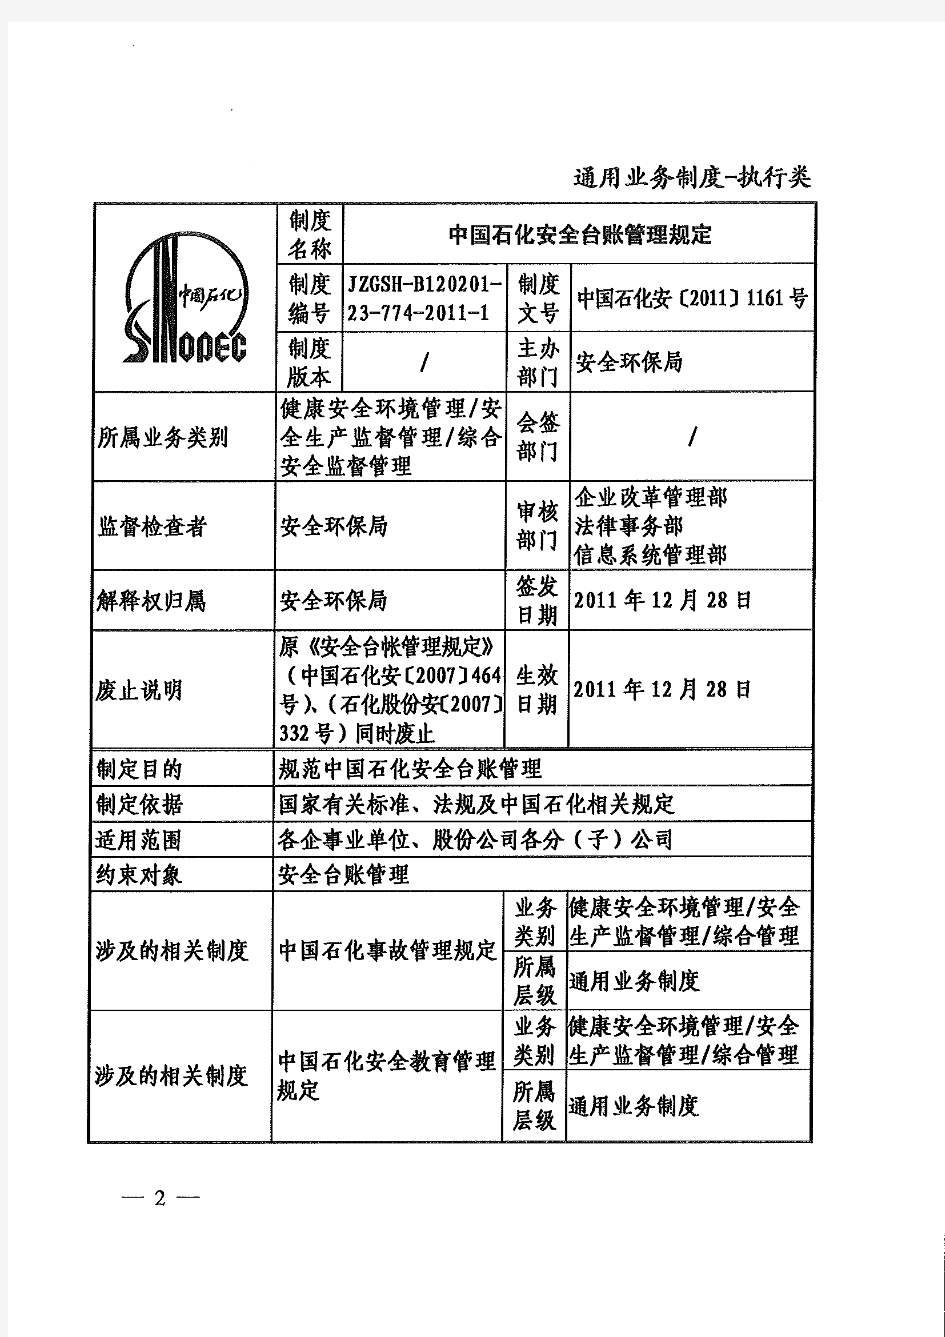 中石化安[2011]1161号《中国石化安全台账管理规定》